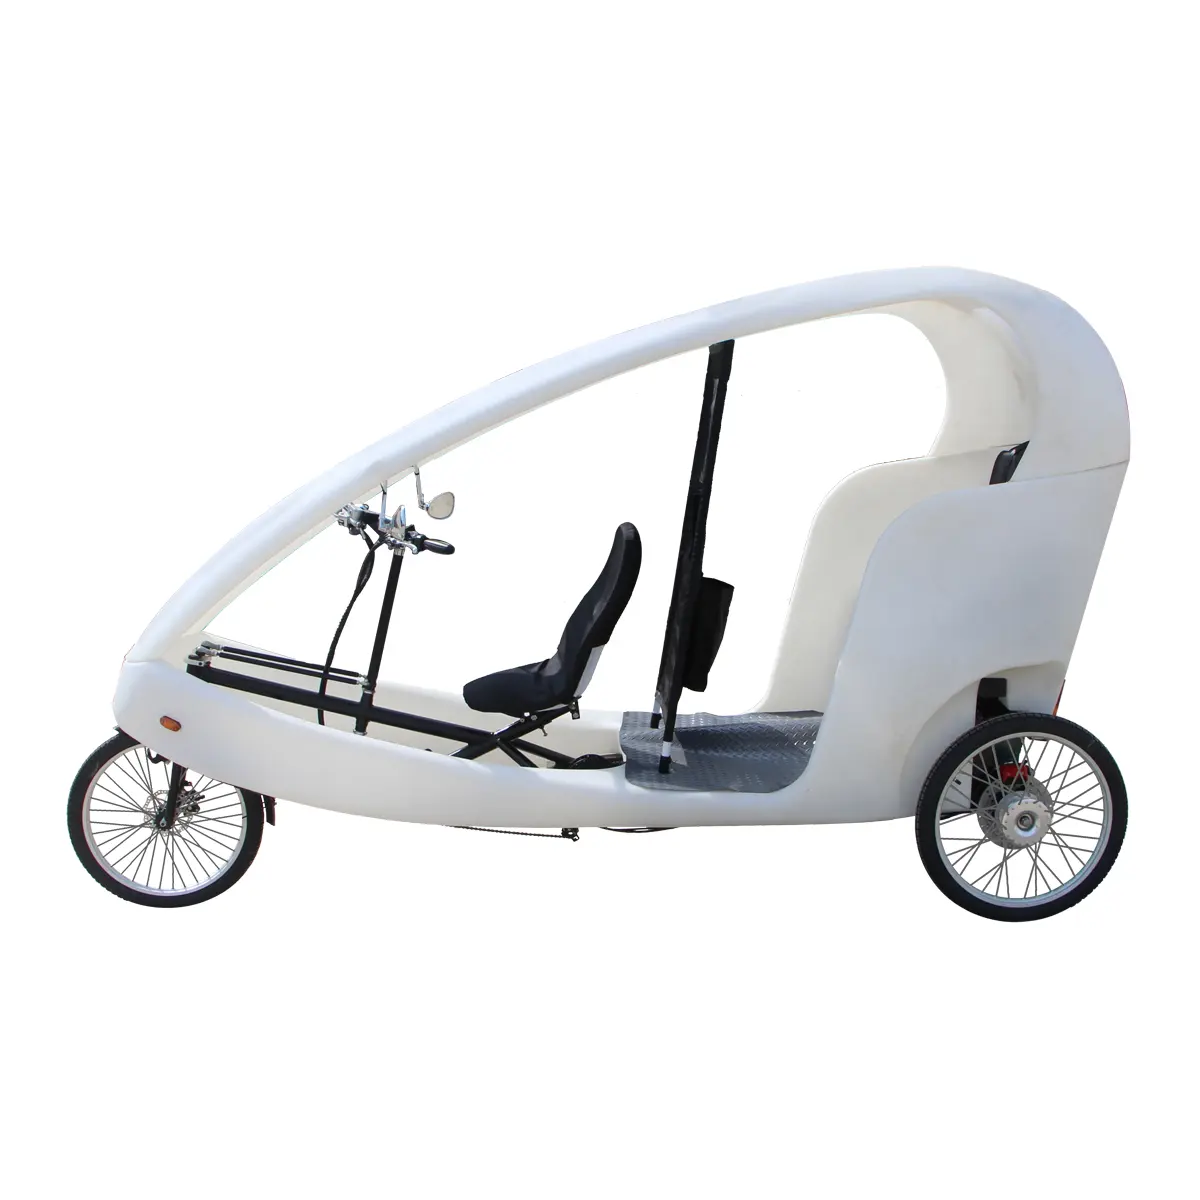 Авто рикша, трехколесный мотоцикл, аренда, бизнес-аккумулятор, Электрический педикаб, велосипед, такси с пассажирским сиденьем